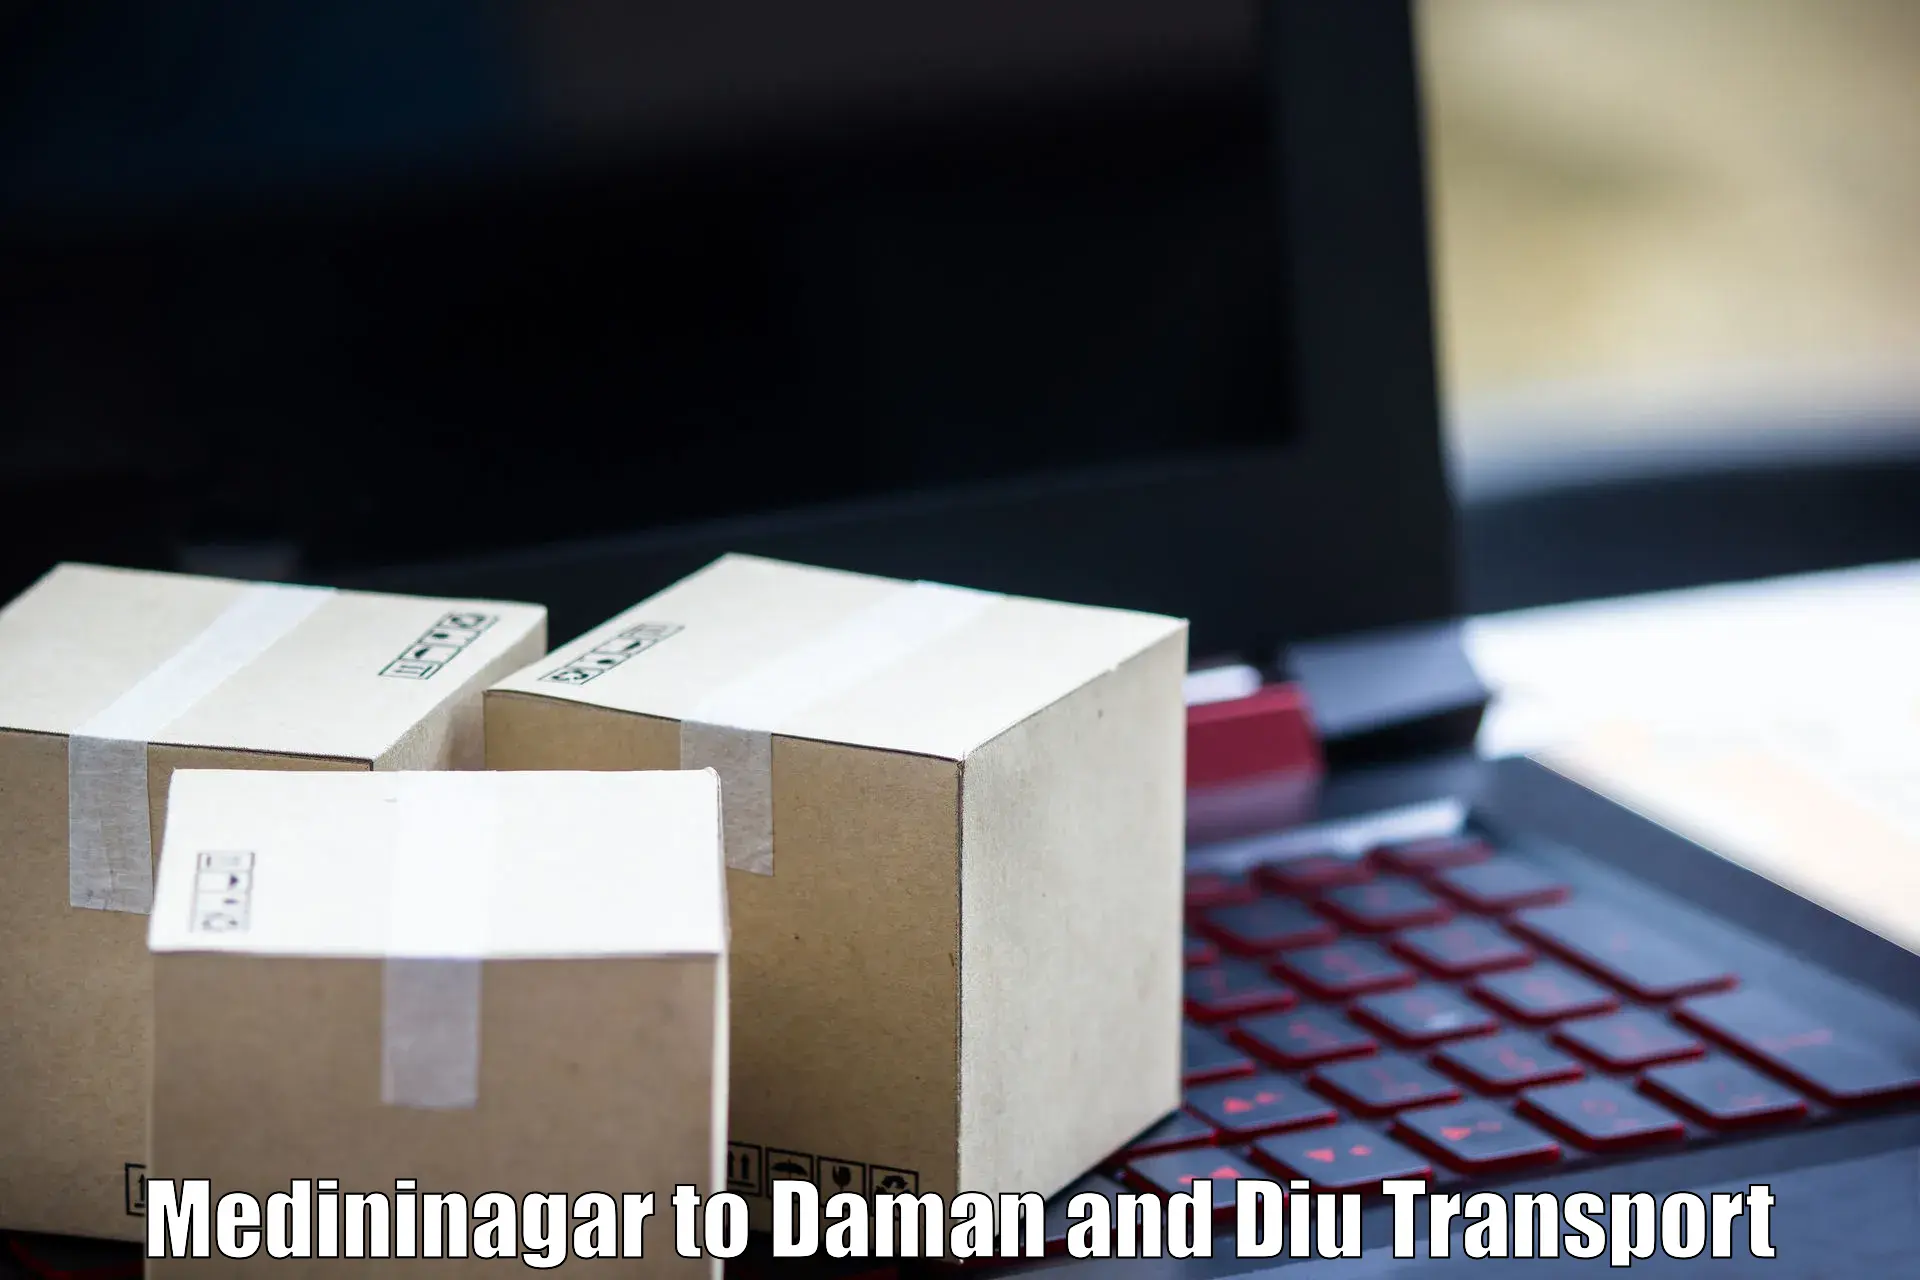 International cargo transportation services in Medininagar to Daman and Diu